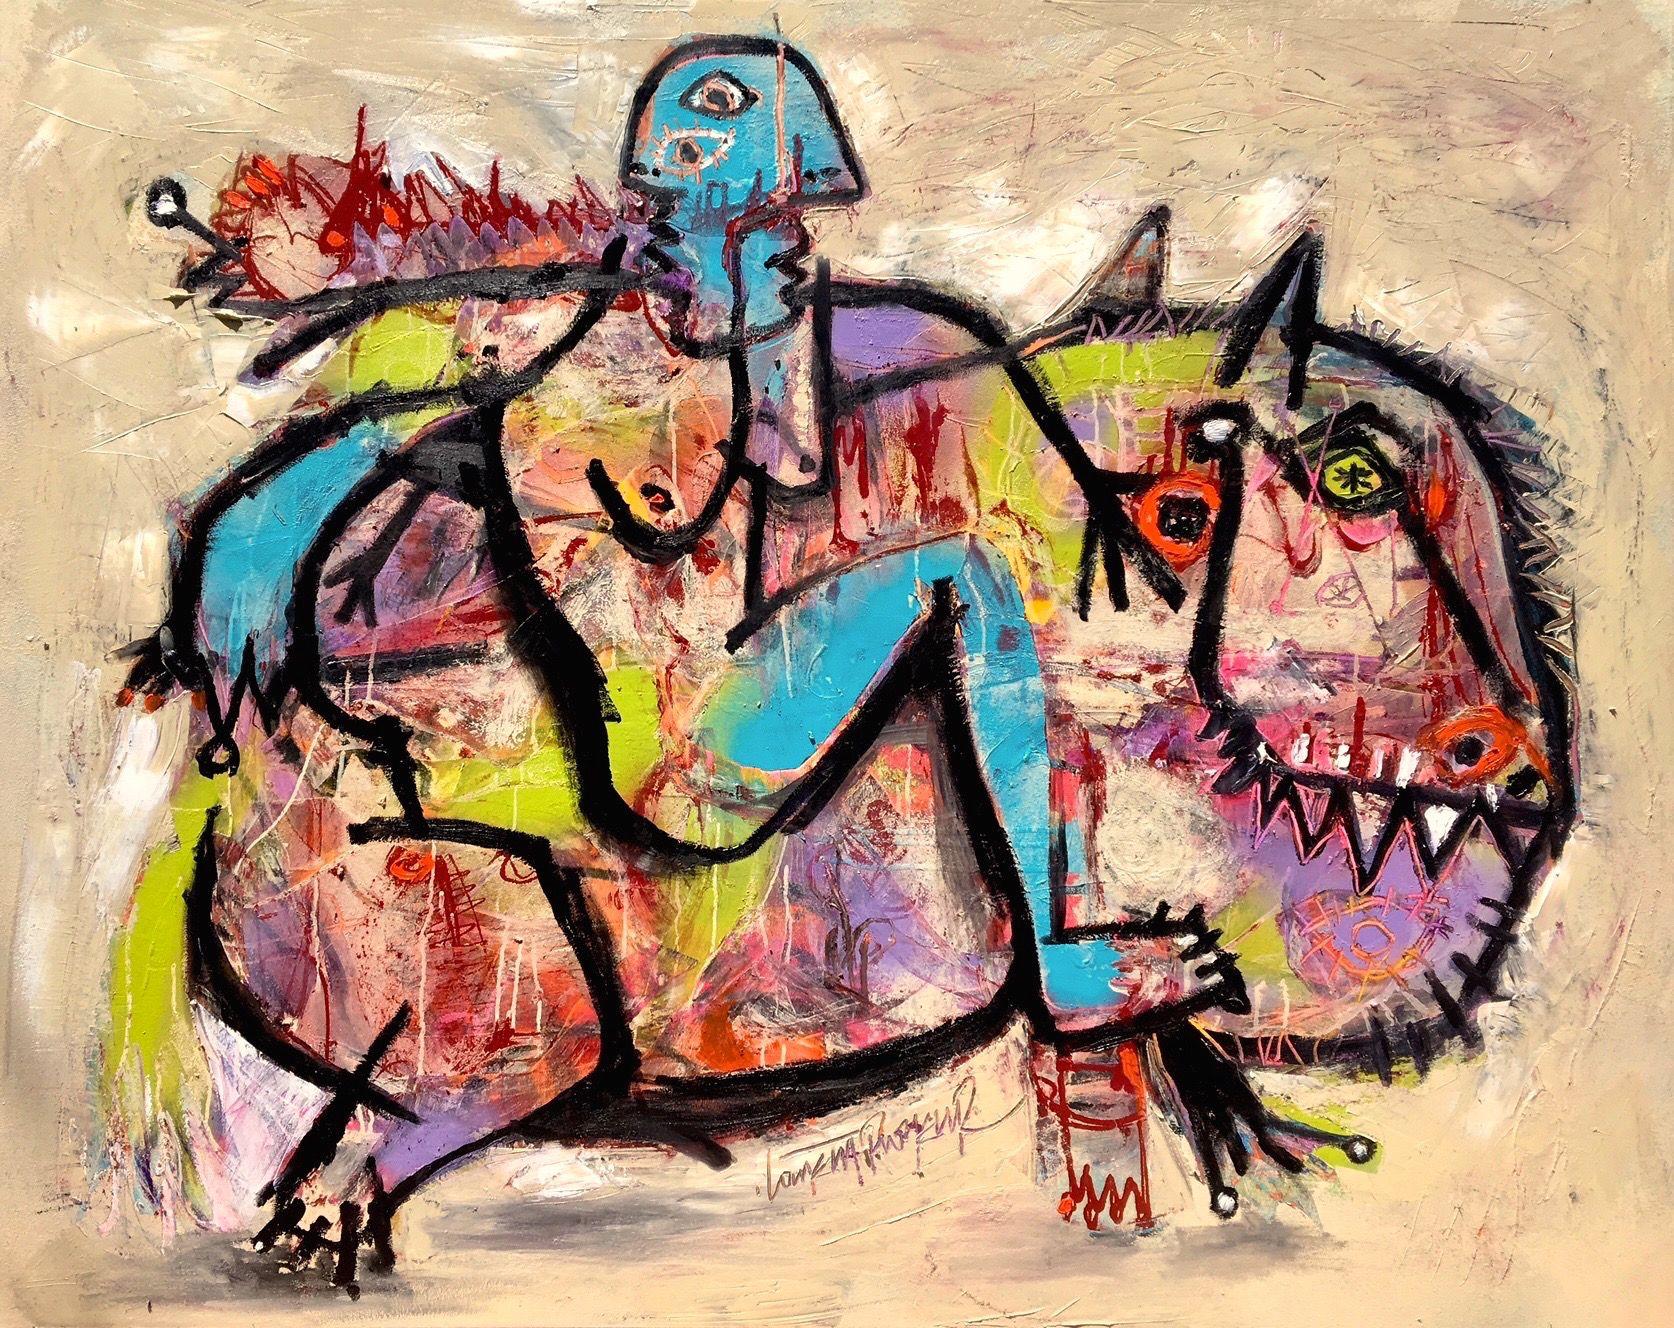 Peinture à l'huile sur toile « Riding the bull » (Vendre le taureau) - Painting de Laurent Proneur